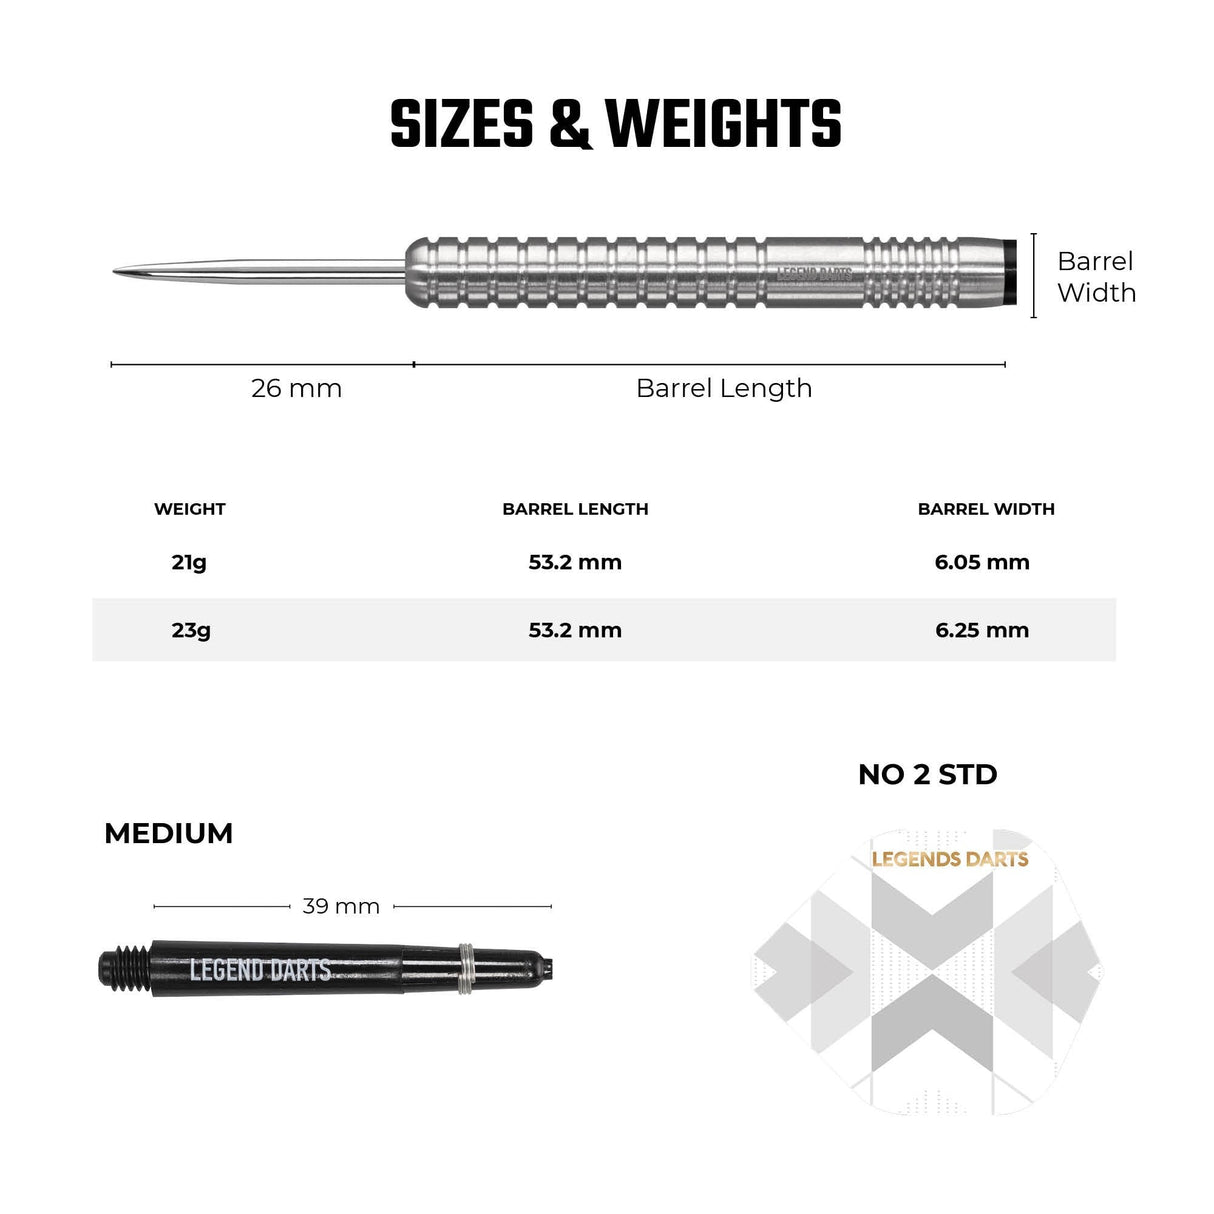 Legend Darts - Steel Tip - 90% Tungsten - Pro Series - V2 - Ringed